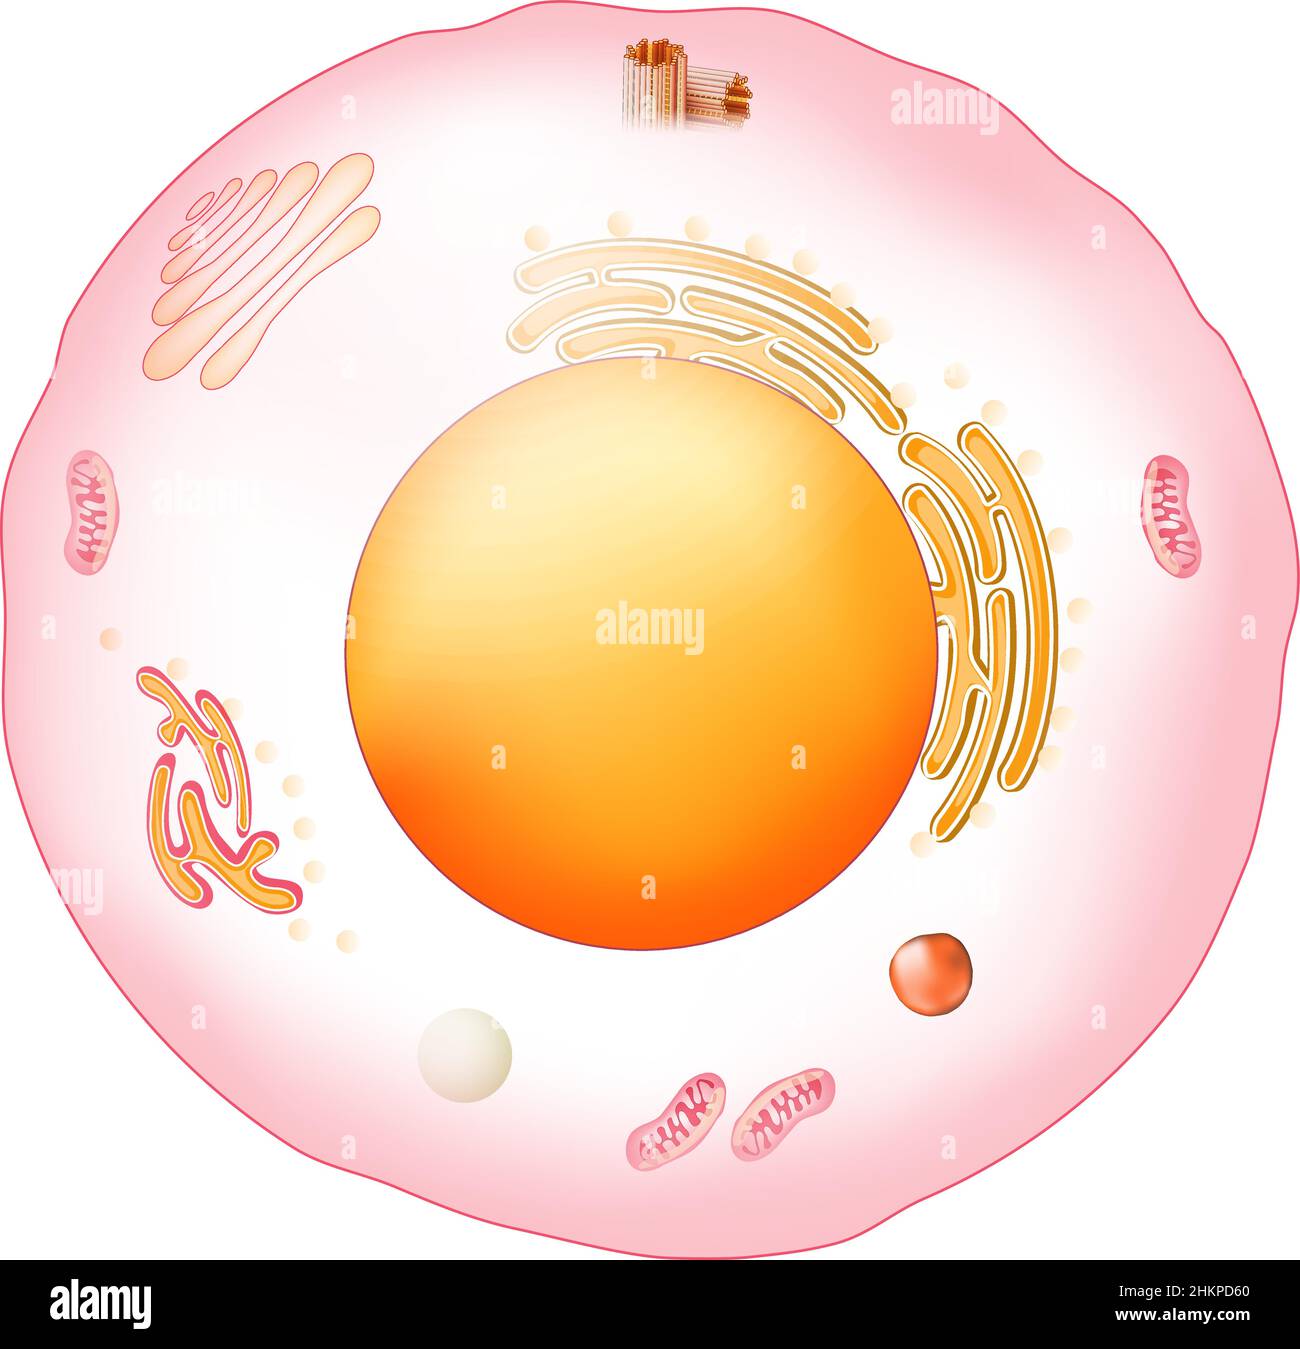 Anatomia delle cellule animali. Struttura e organelli di cellule eucariotiche. Poster vettoriale per l'istruzione. Illustrazione Illustrazione Vettoriale